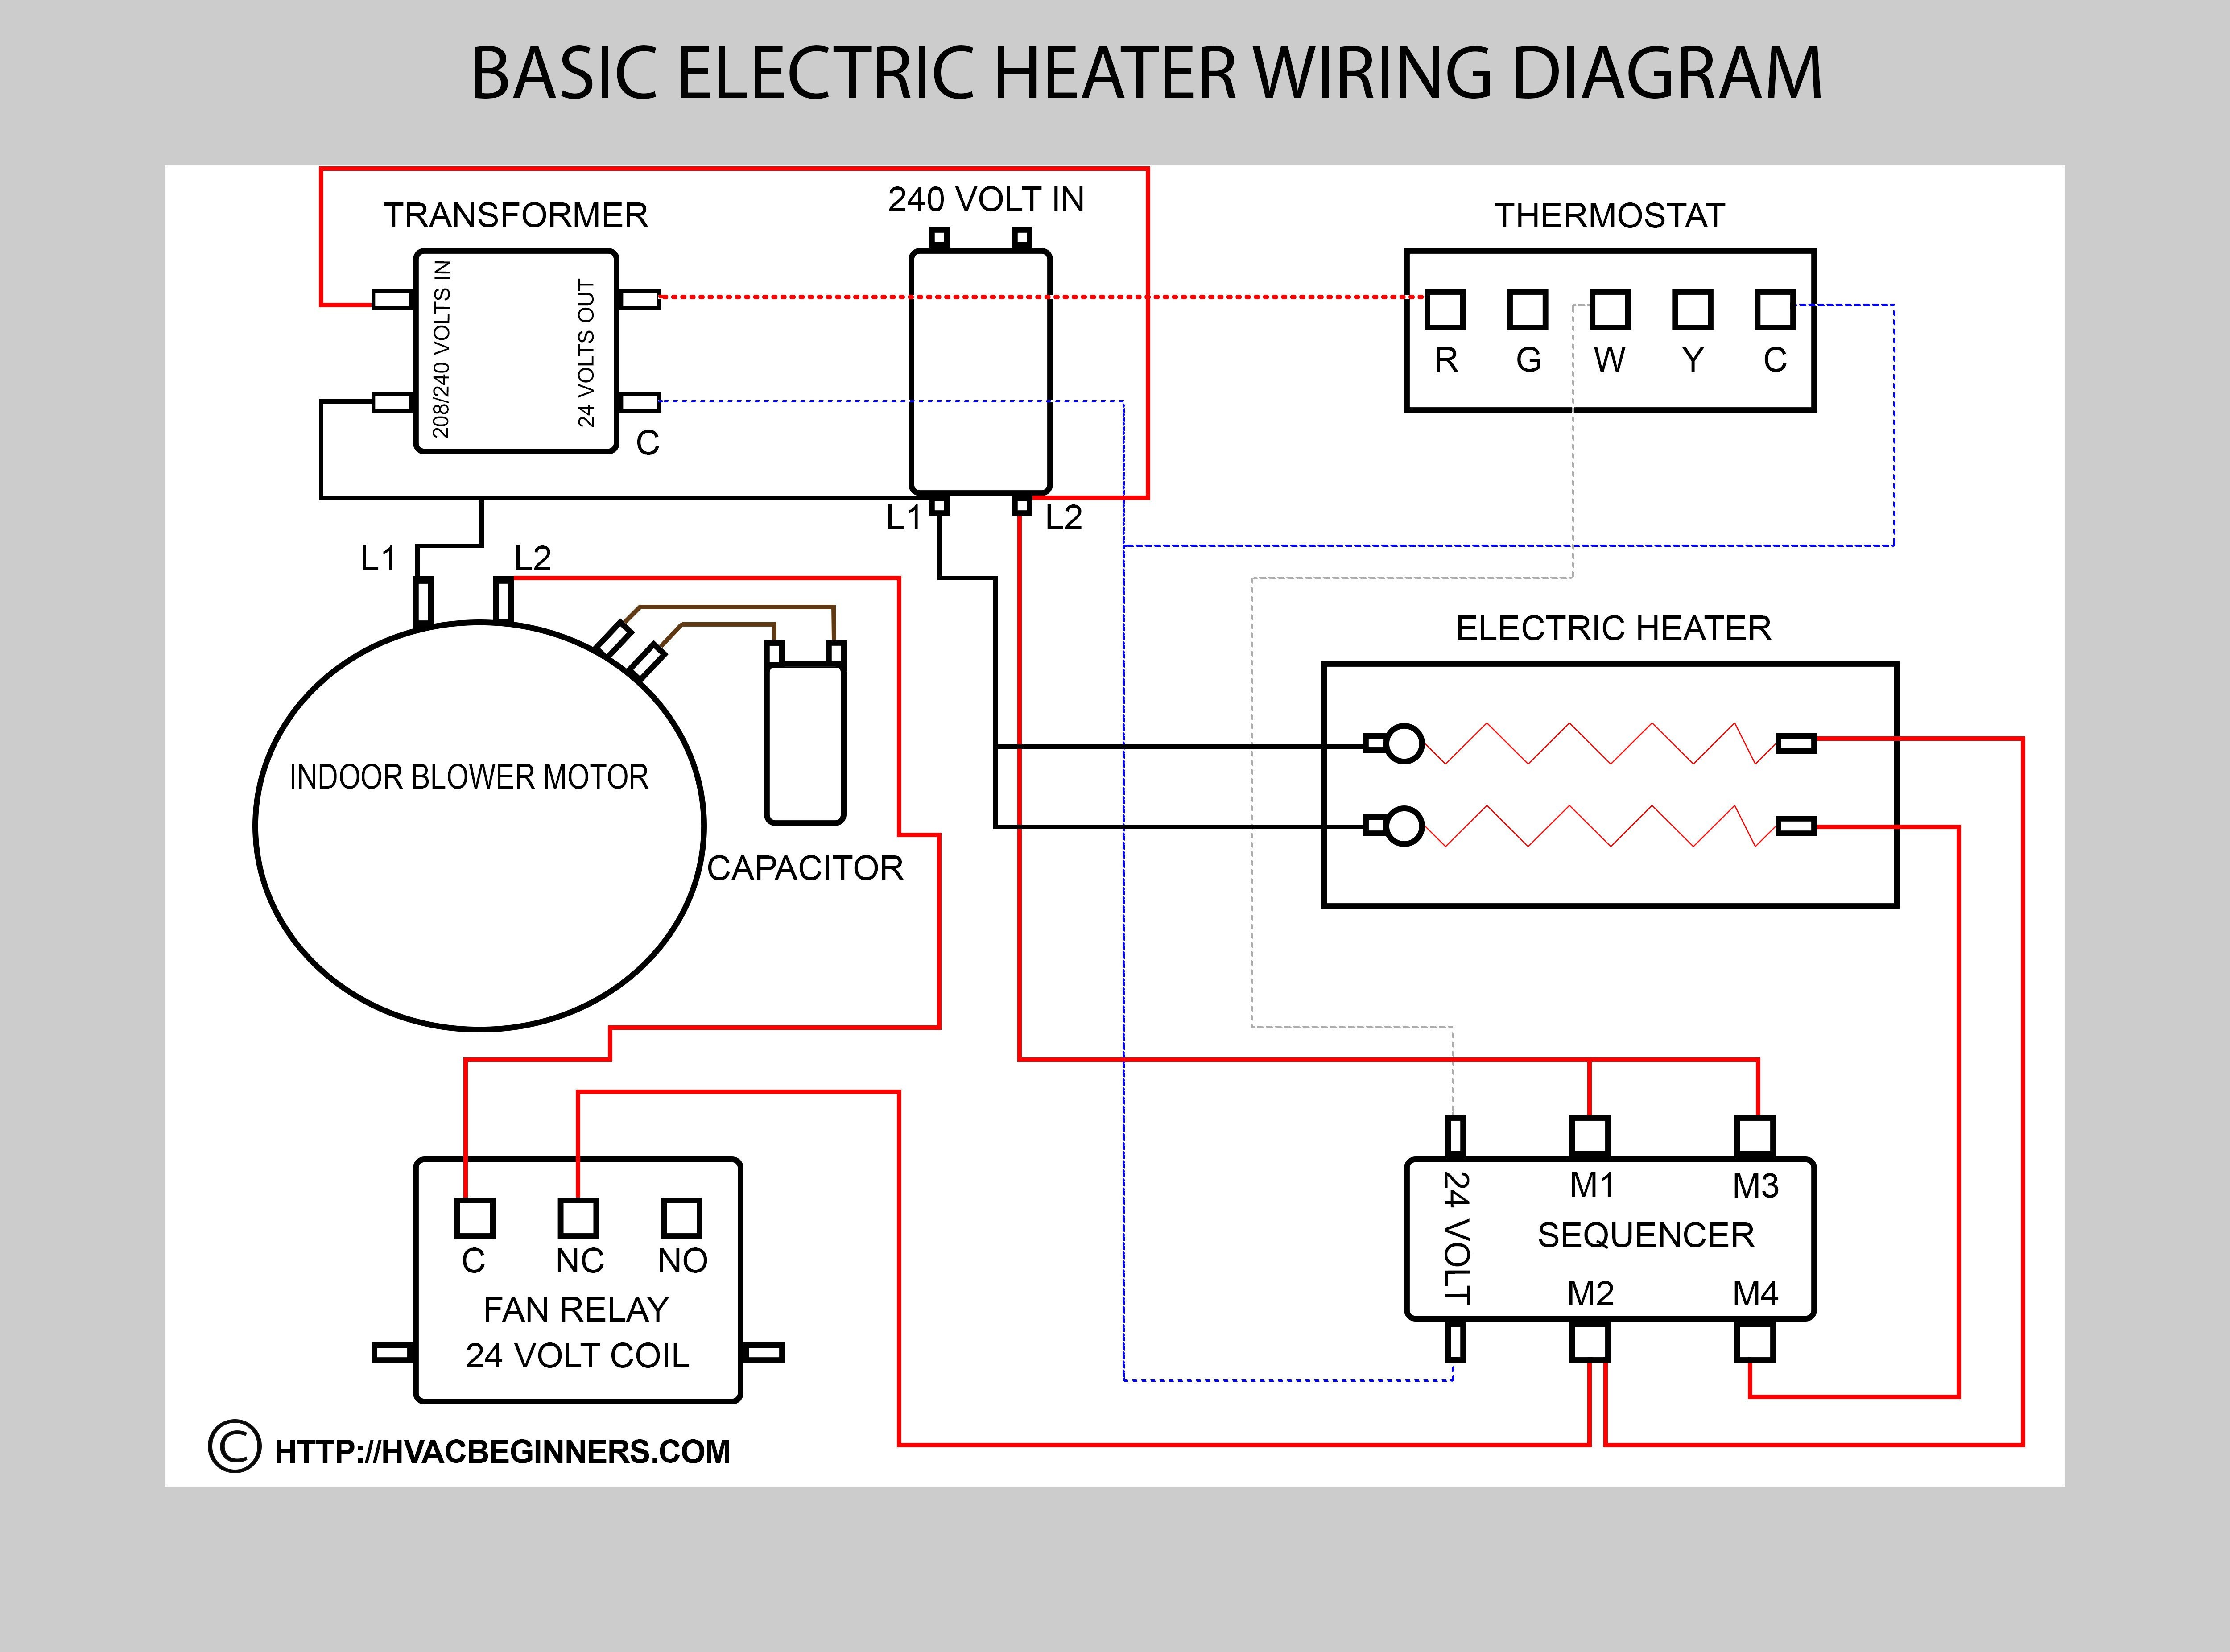 Dayton Electric Motors Wiring Diagram 2018 Dayton Unit Heater Wiring Diagram Sample